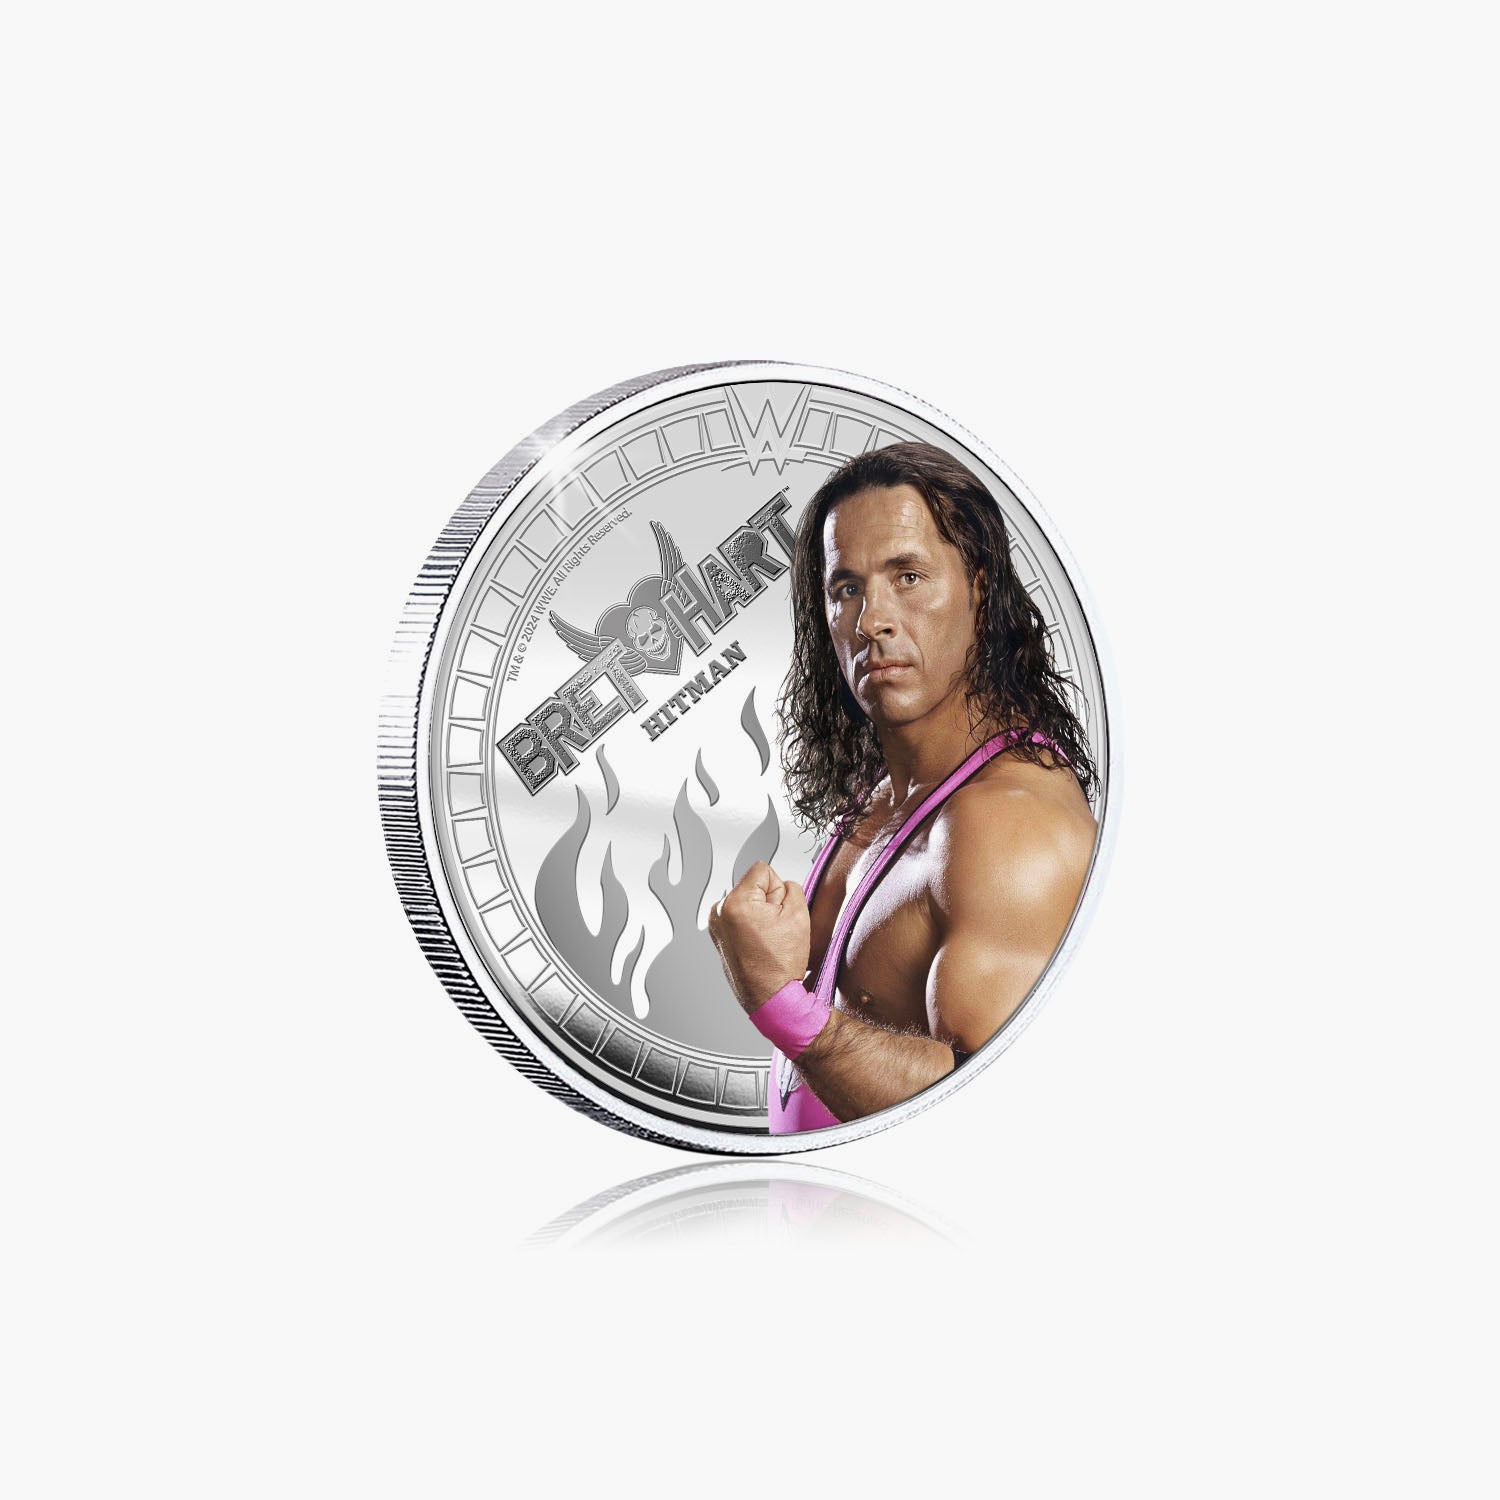 Collection commémorative WWE - Bret Hit Man Hart - Commémorative plaquée argent 32 mm